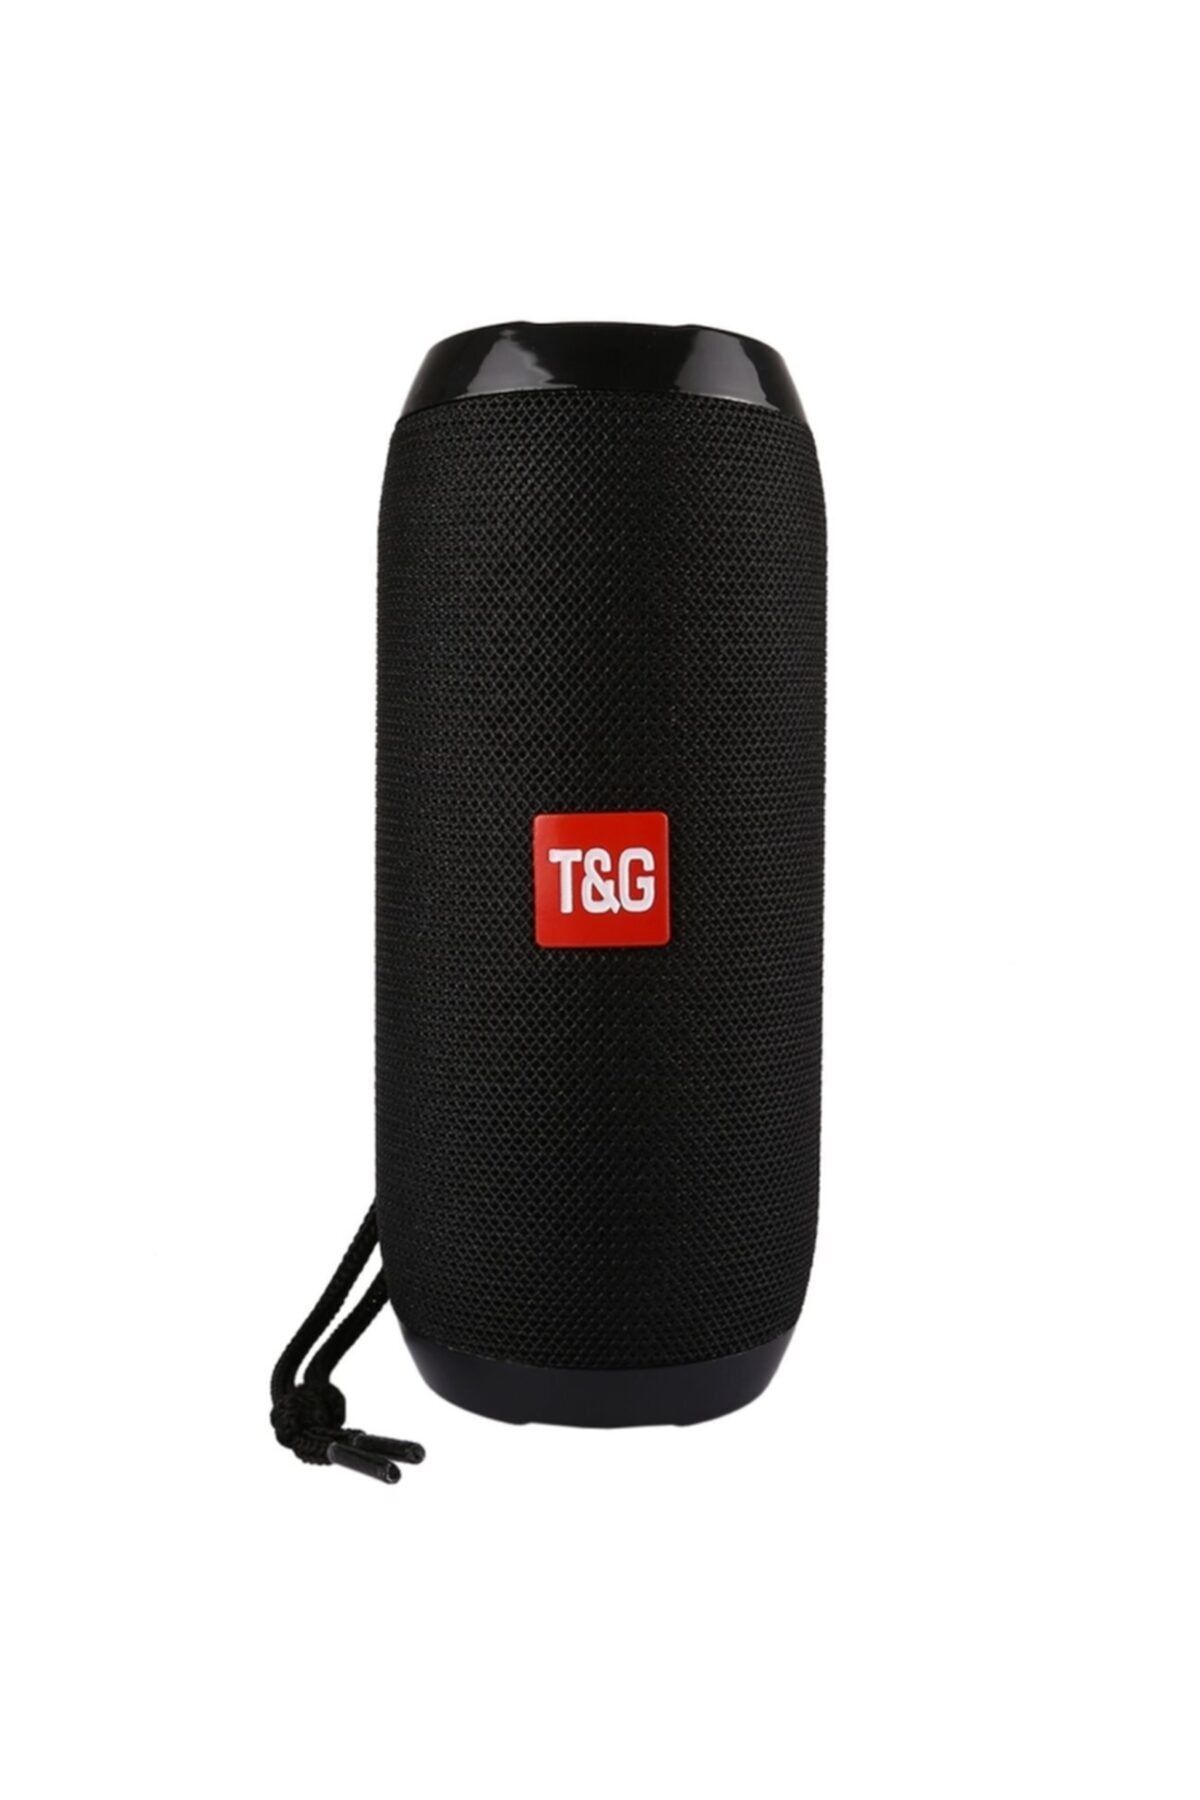 T G T&g Kablosuz Taşınabilir Bluetooth Hoparlör Ses Bombası Extra Bass Bilgisayar Hoparlör Uygun